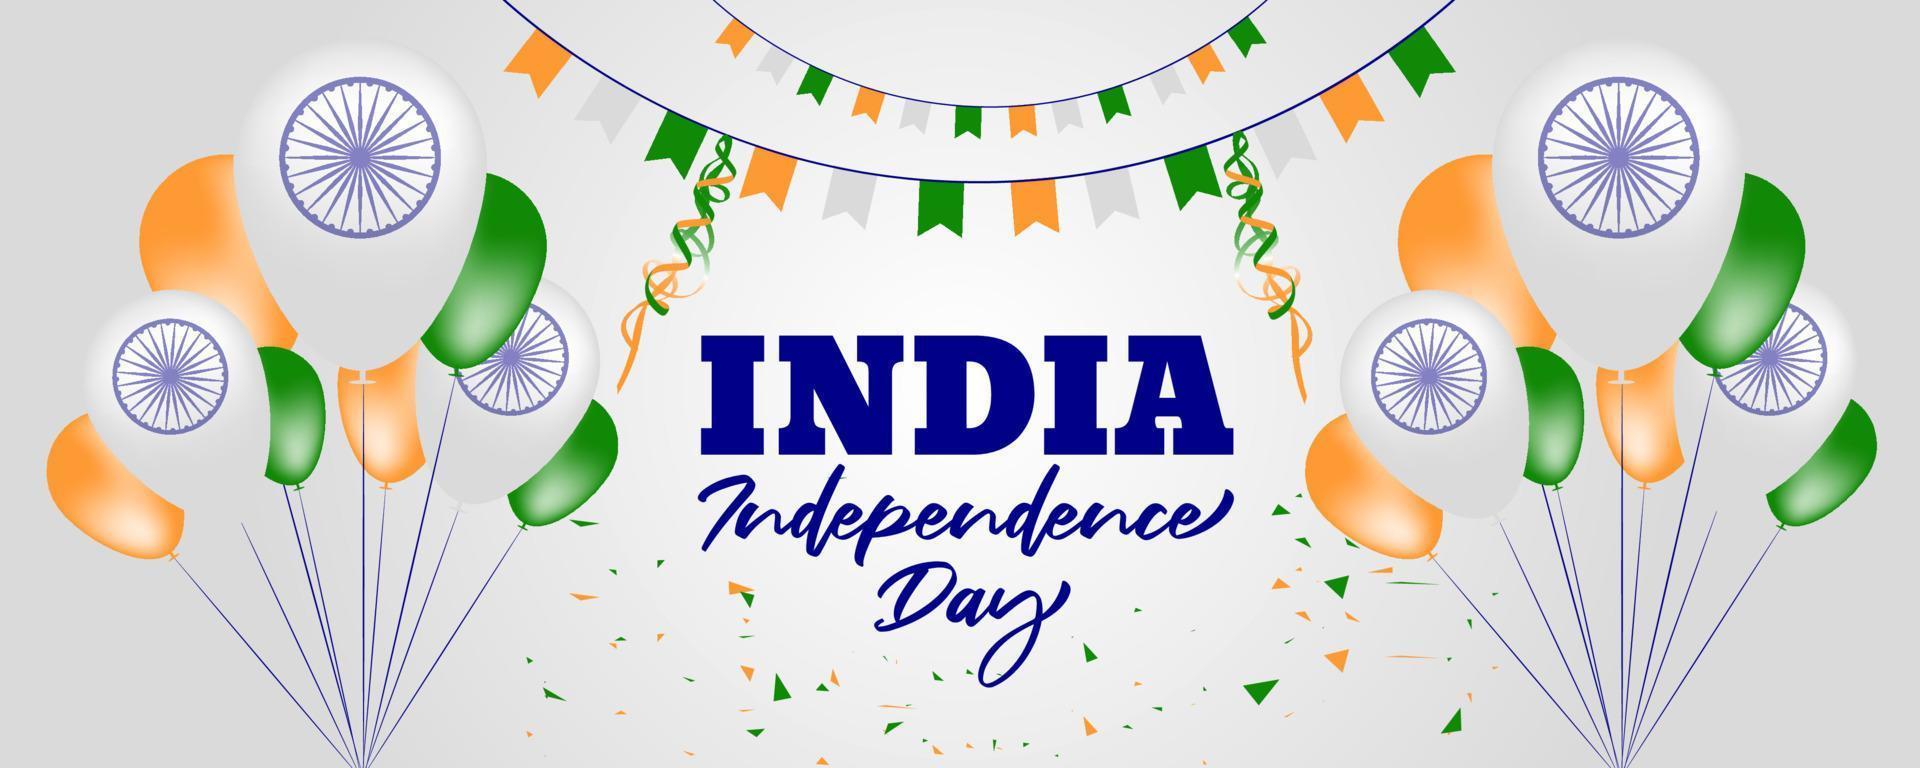 disegno realistico del fondo del giorno dell'indipendenza indiana del 15 agosto vettore